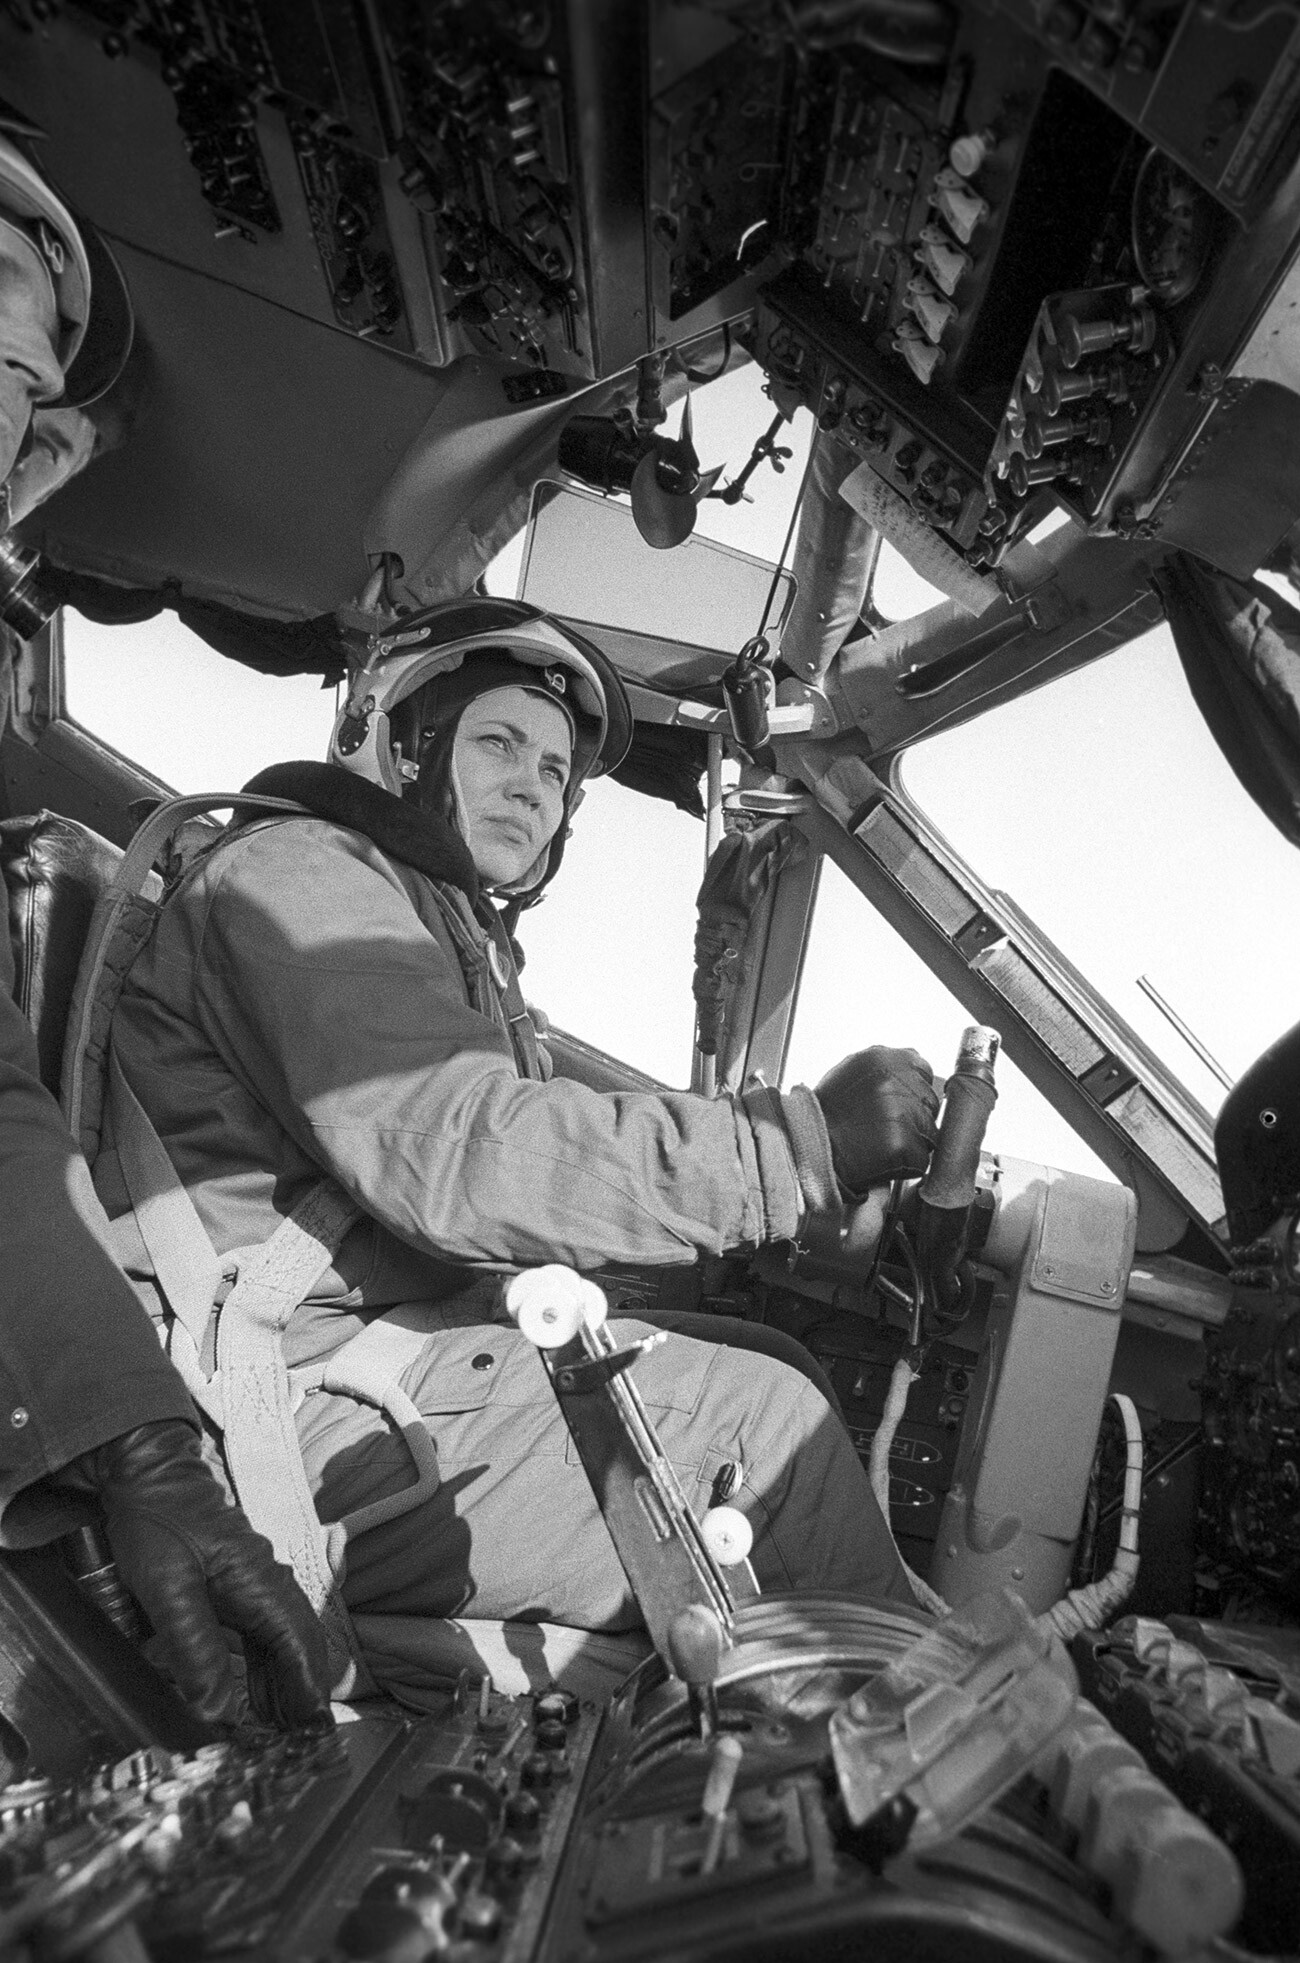 Marina Popovič, testna pilotka 1.razreda, odlikovana mojstrica športa ZSSR, večkratna svetovna rekorderka, v pilotski kabini težkega turbopropelerskega transportnega letala AN-22 pred testnim poletom. Natančen datum in kraj snemanja nista znana